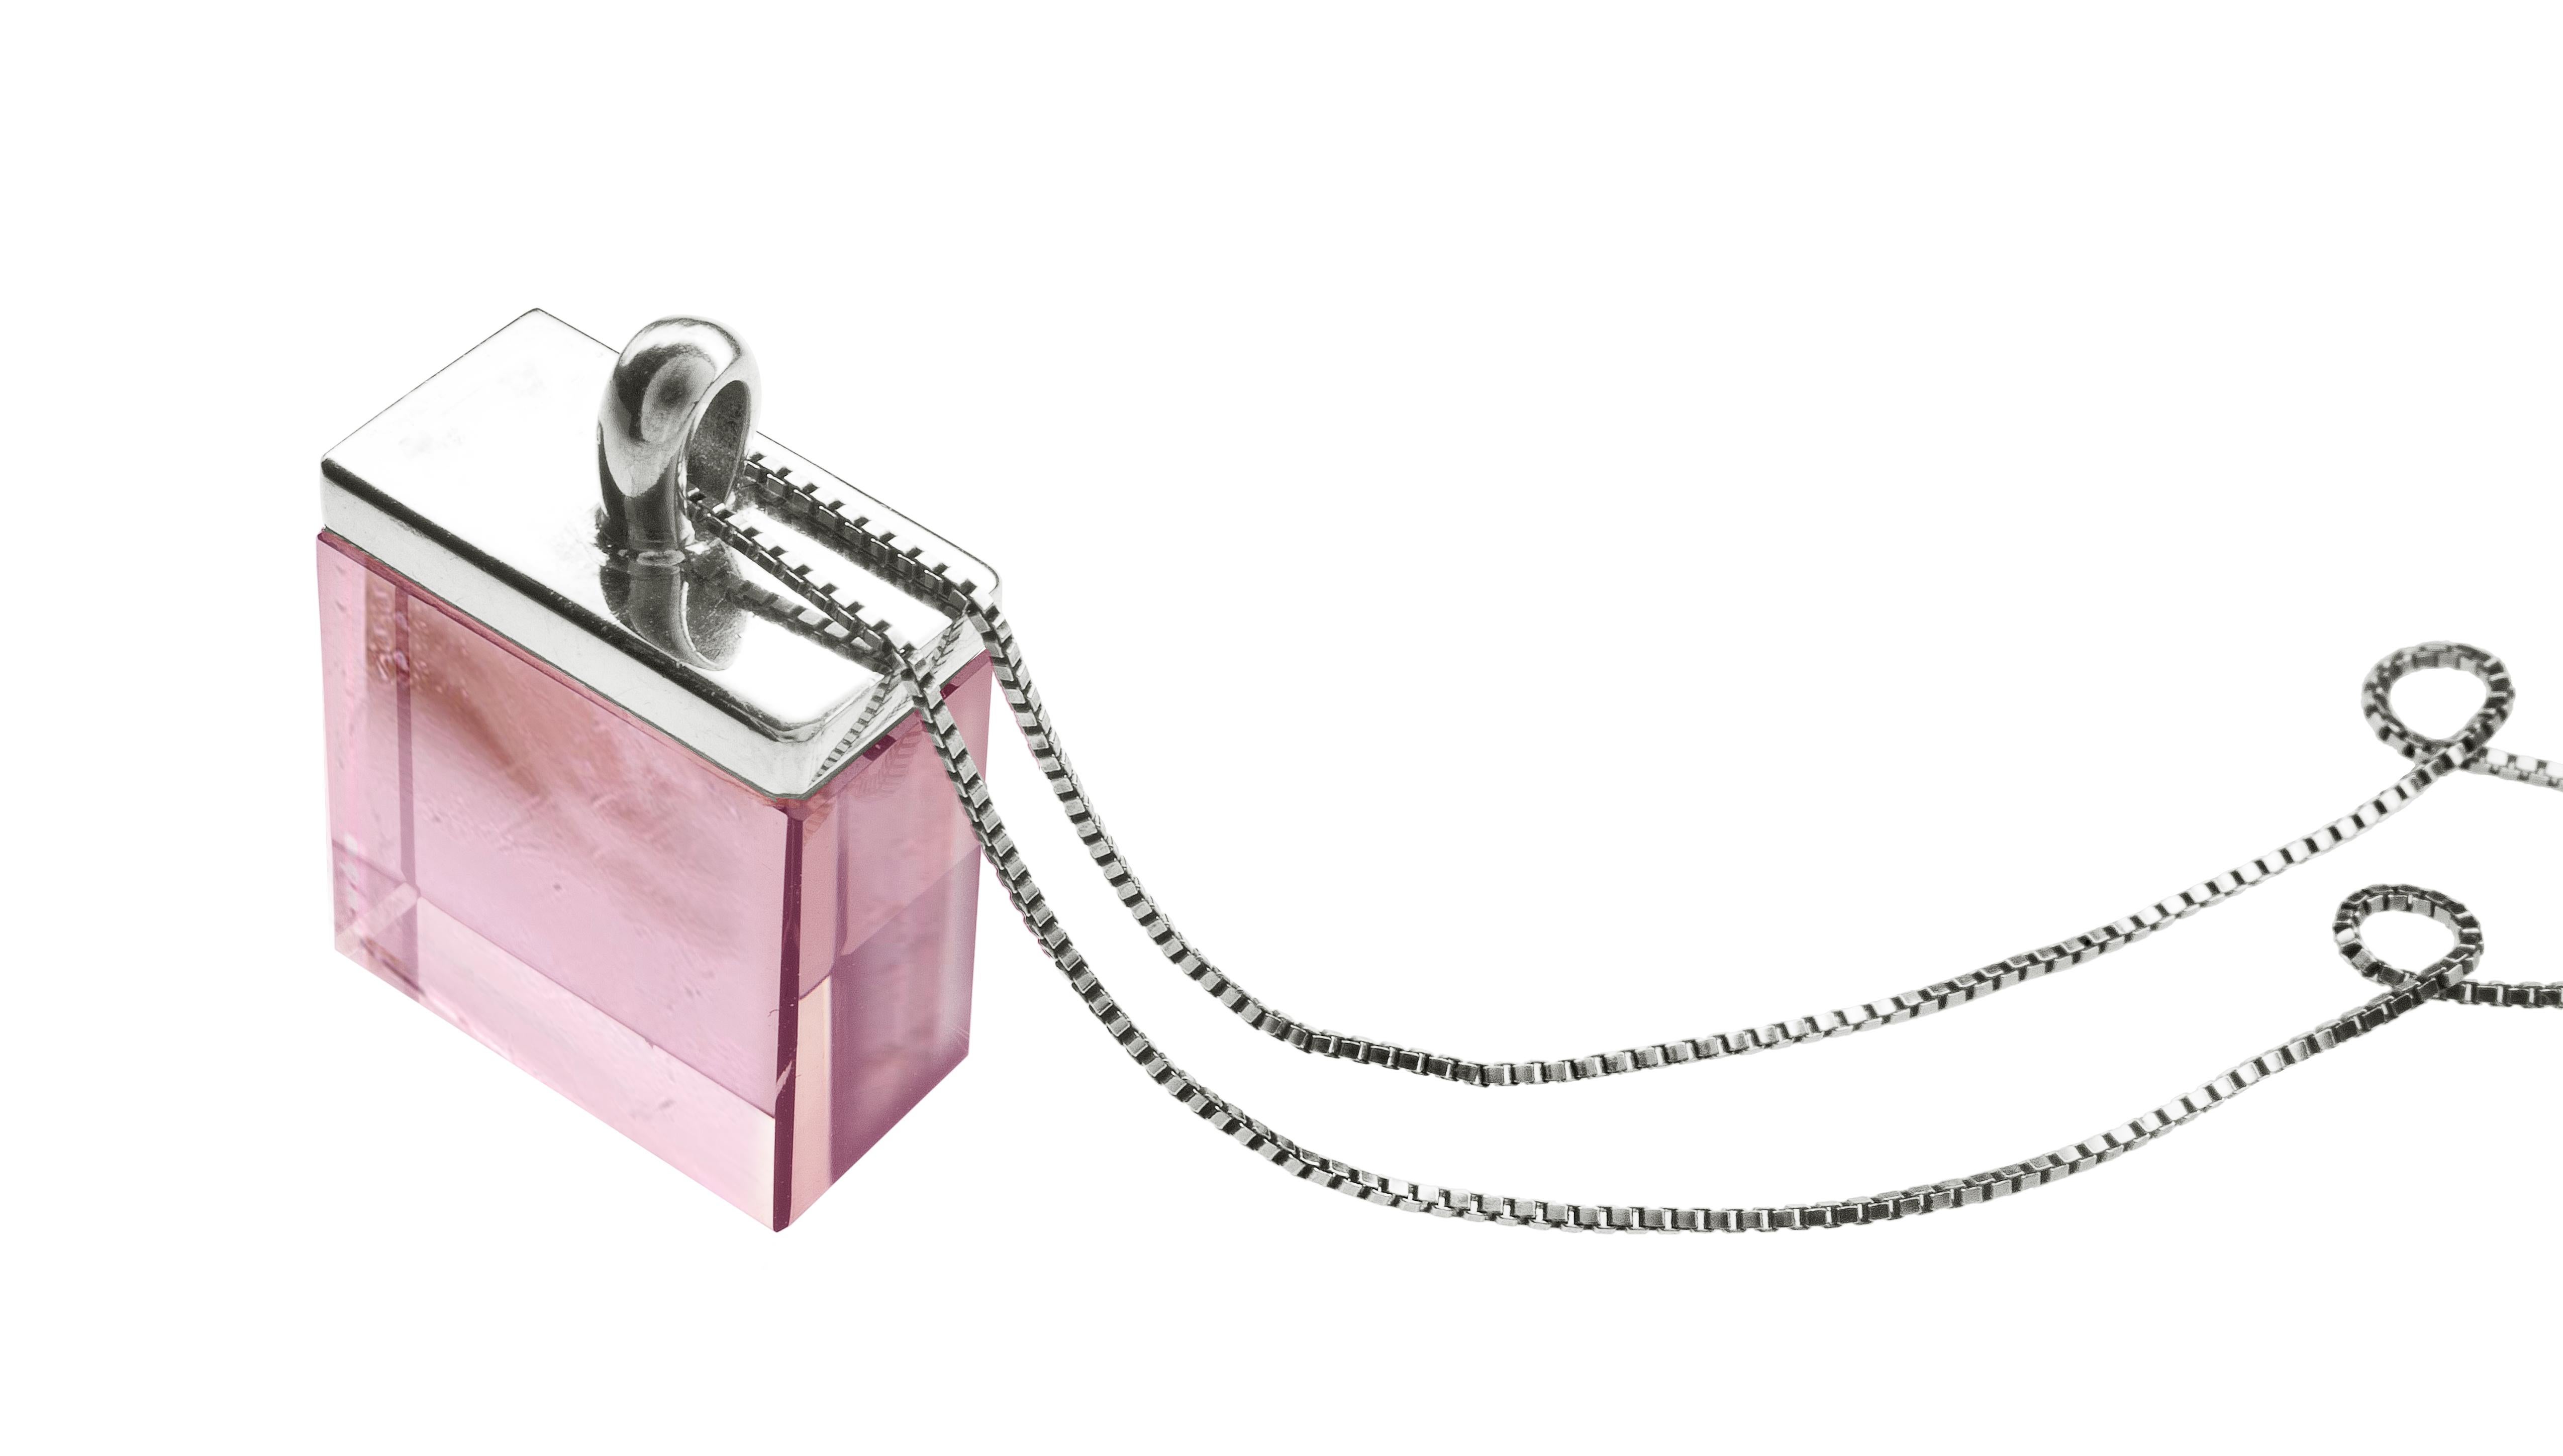 Ce collier pendentif contemporain présente une tourmaline rose naturelle non traitée de 15x15x8 mm, taillée spécialement pour l'artiste par la plus ancienne entreprise d'Allemagne, présente sur le marché depuis le XIXe siècle. Le pendentif